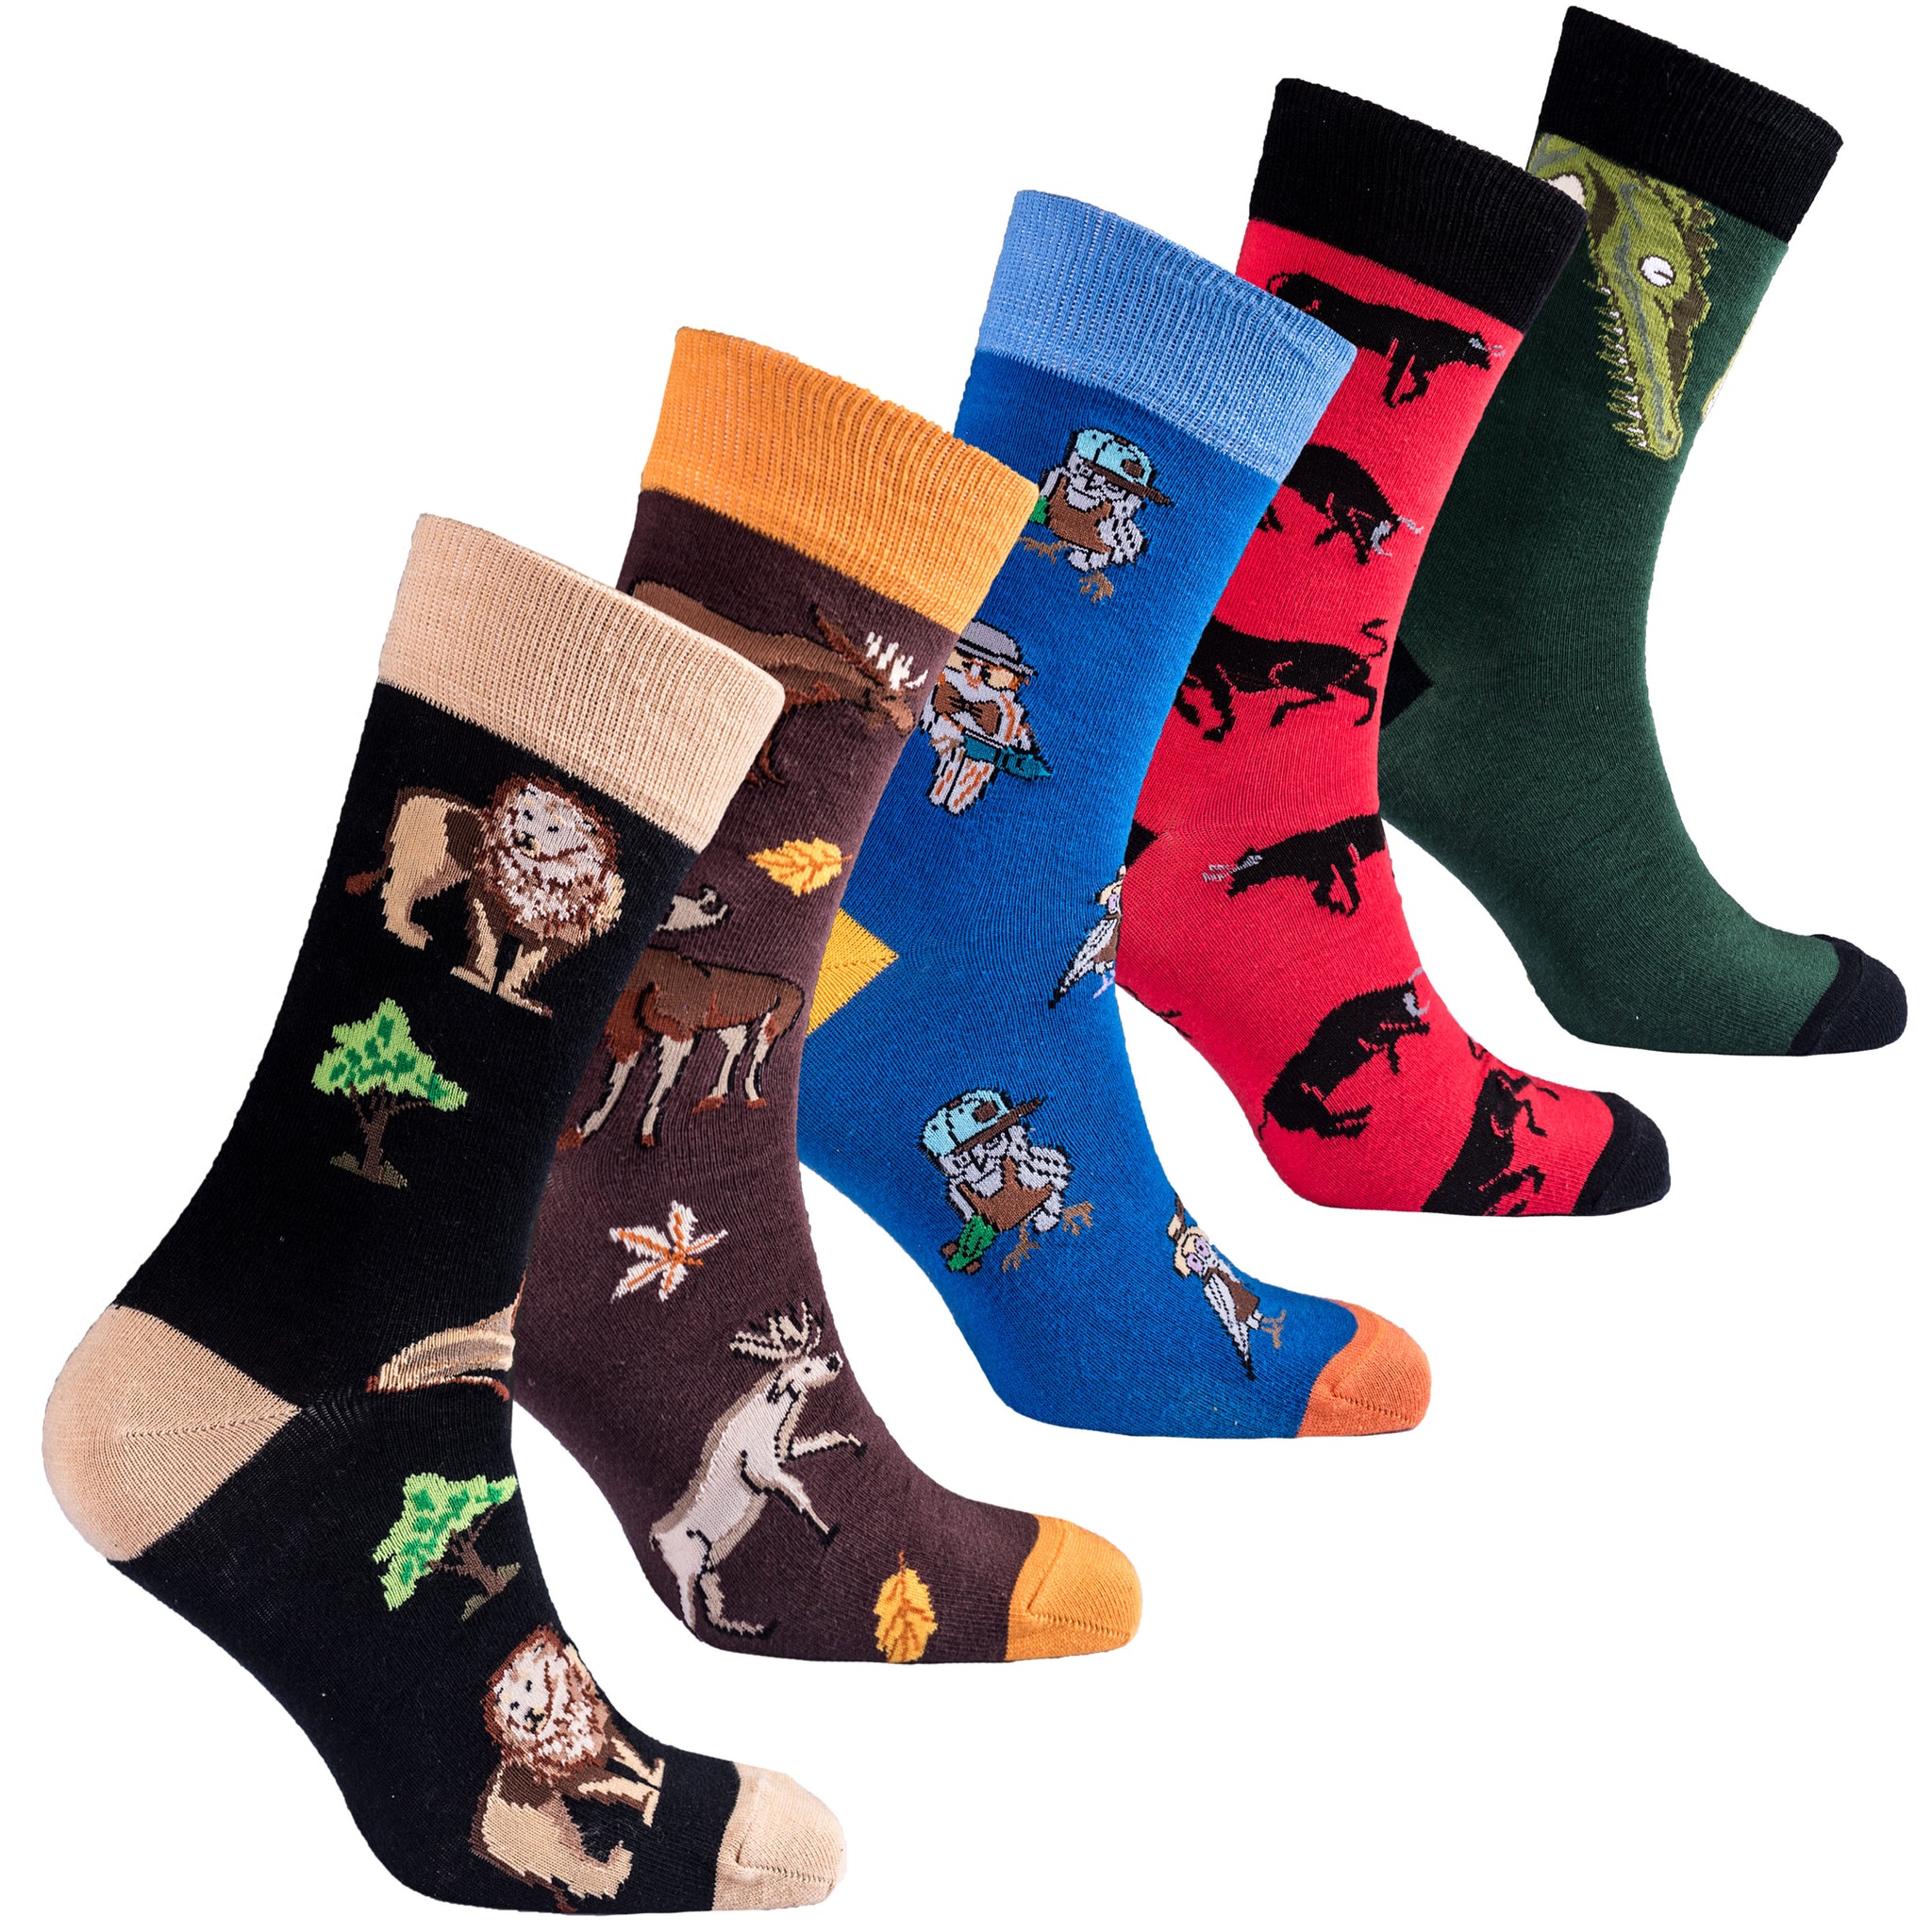 Men's Animal Kingdom Socks